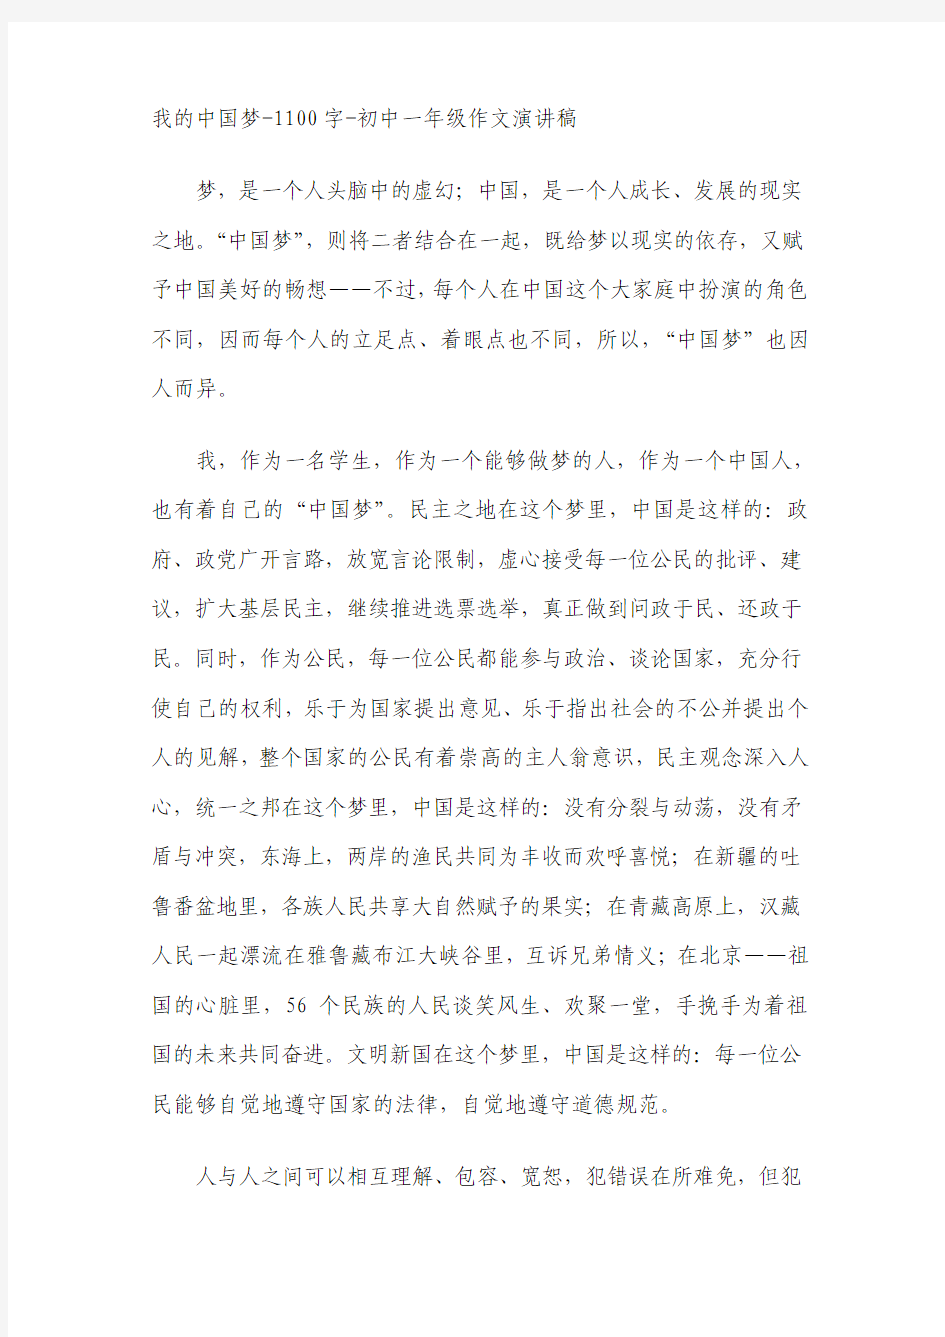 我的中国梦-1100字-初中一年级作文演讲稿